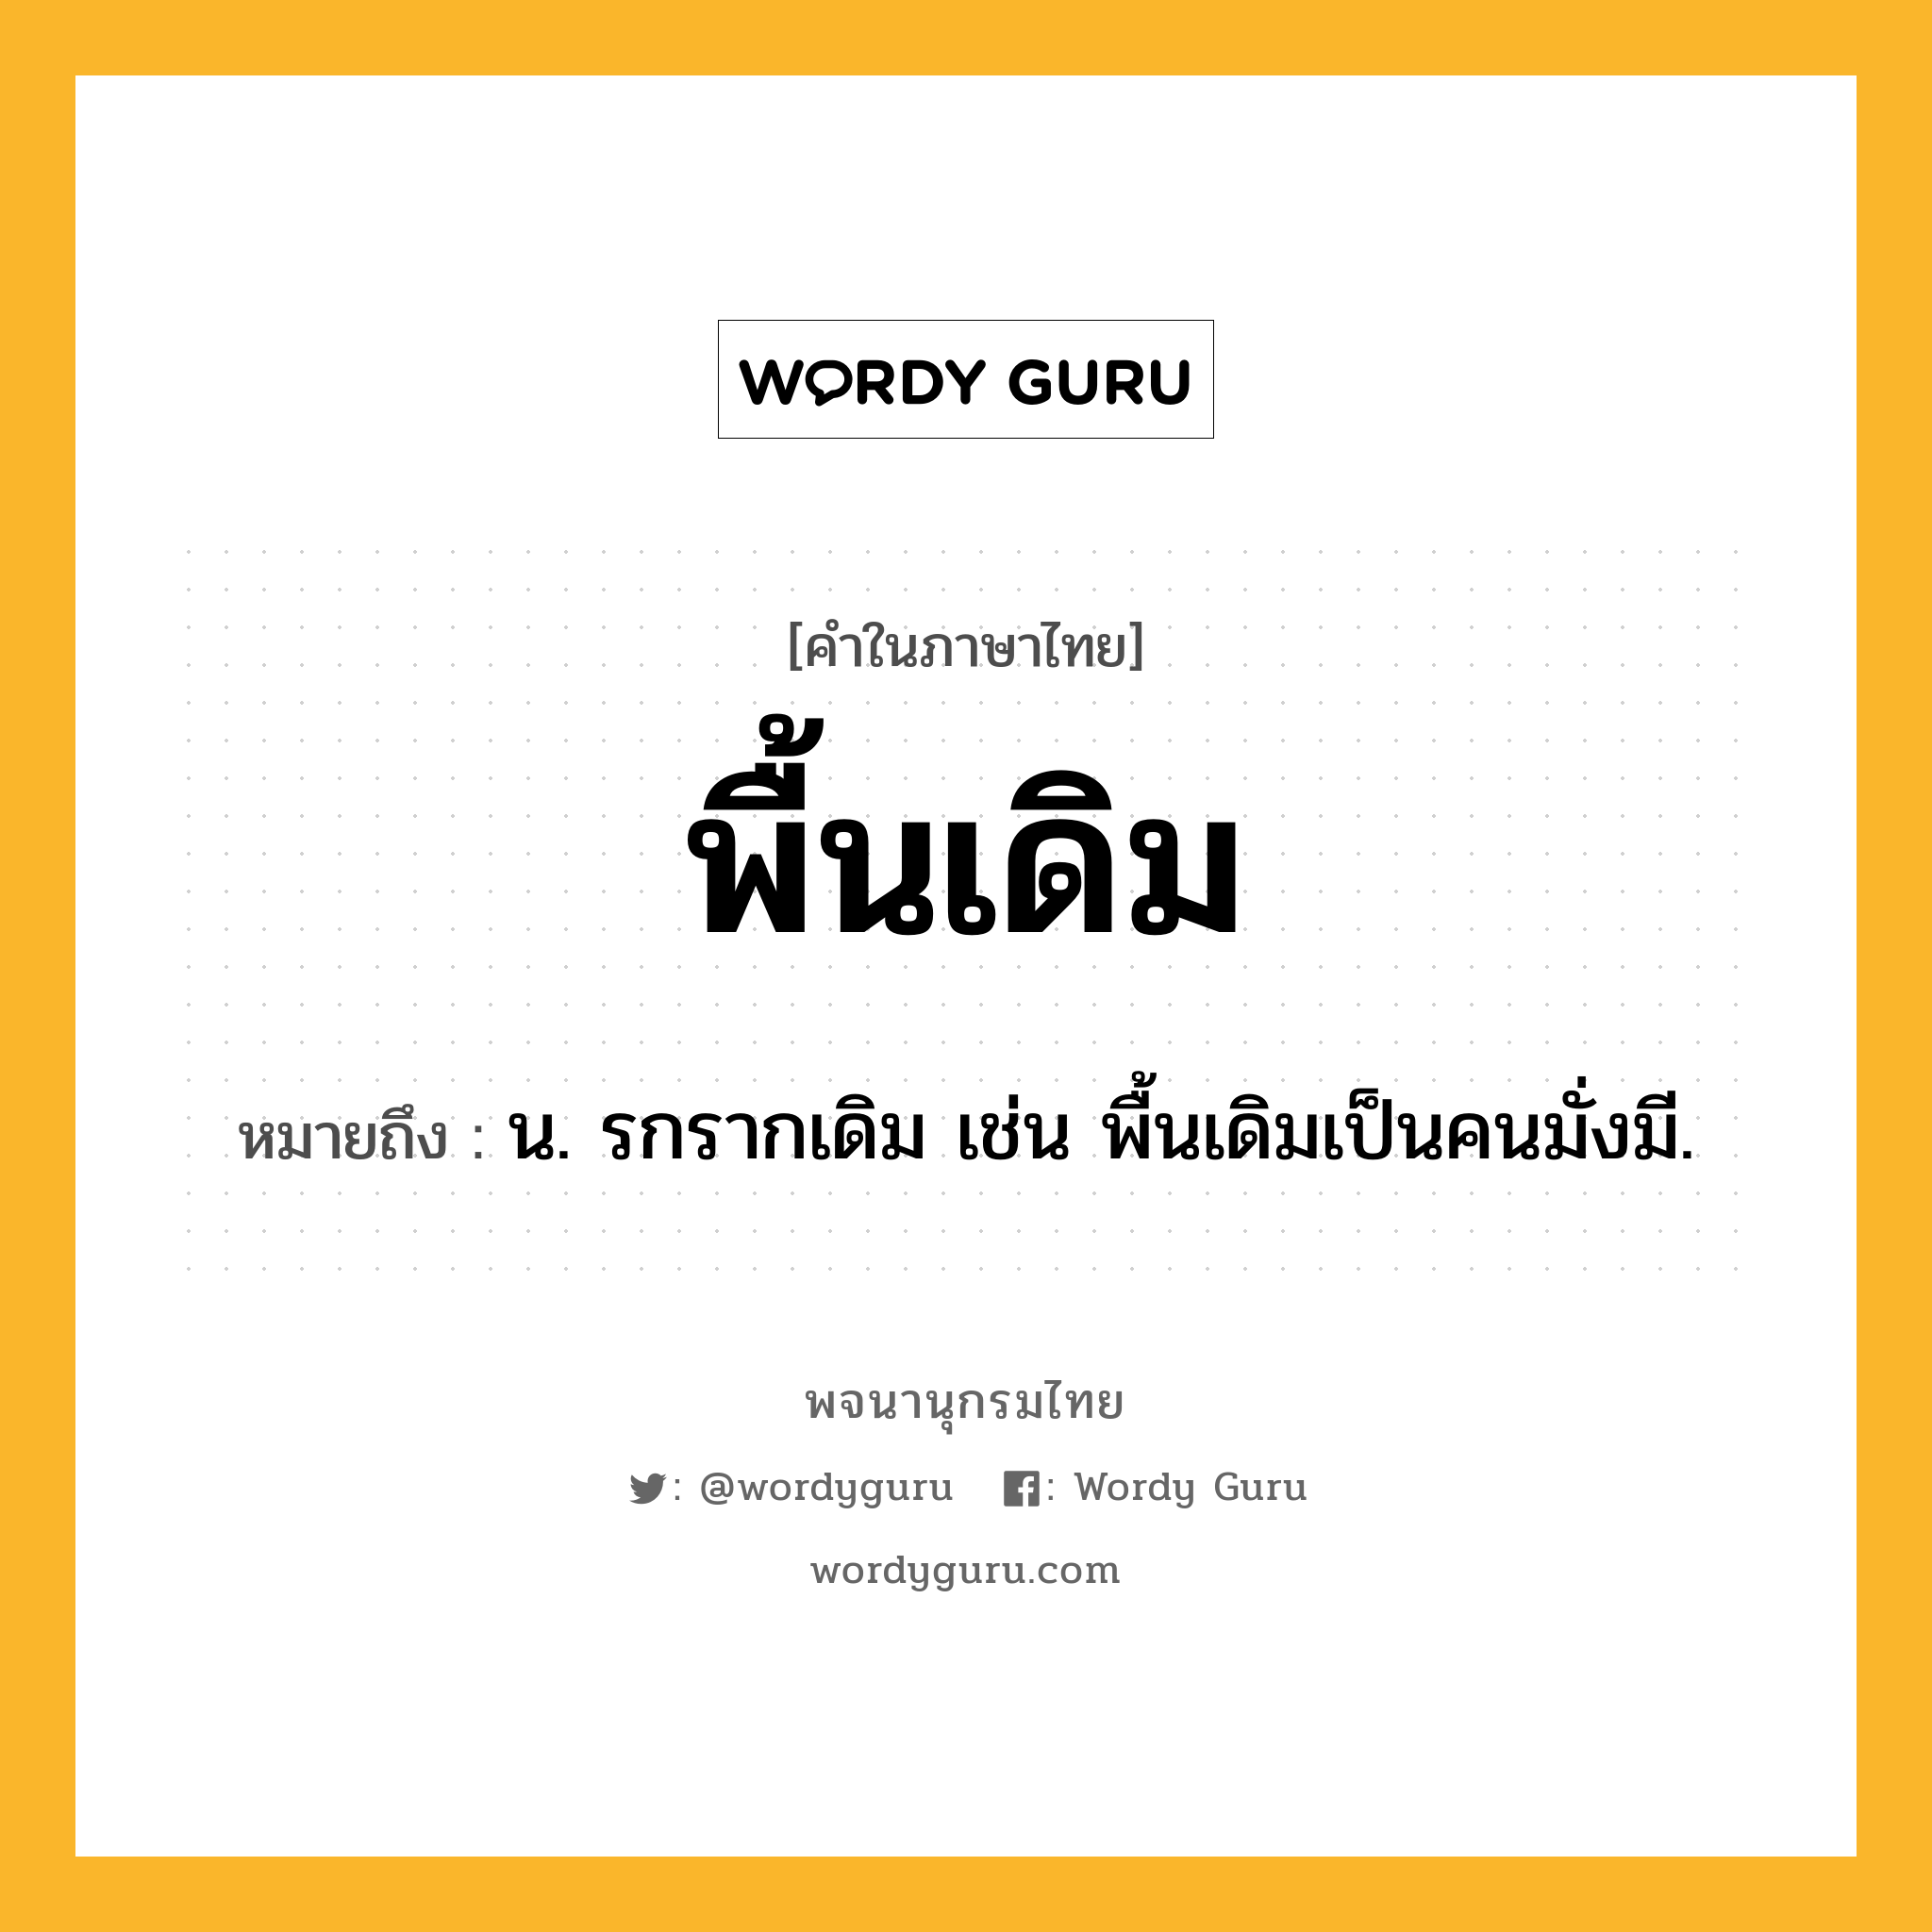 พื้นเดิม ความหมาย หมายถึงอะไร?, คำในภาษาไทย พื้นเดิม หมายถึง น. รกรากเดิม เช่น พื้นเดิมเป็นคนมั่งมี.